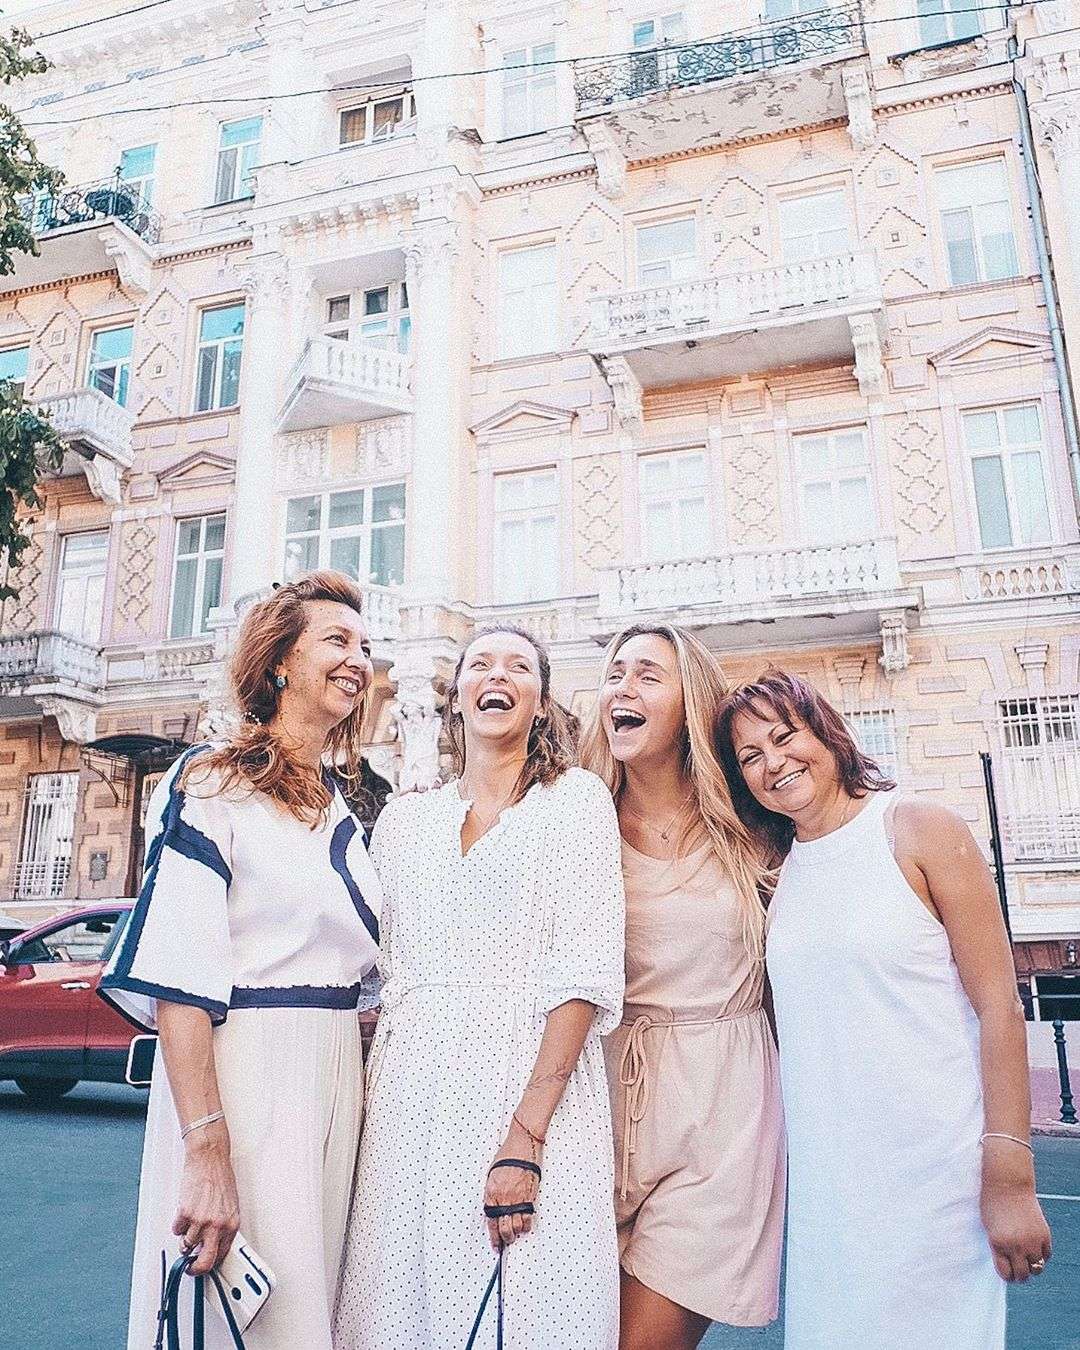 Регина Тодоренко вернулась в родную Одессу и показала, как весело провела здесь время - фото 446220